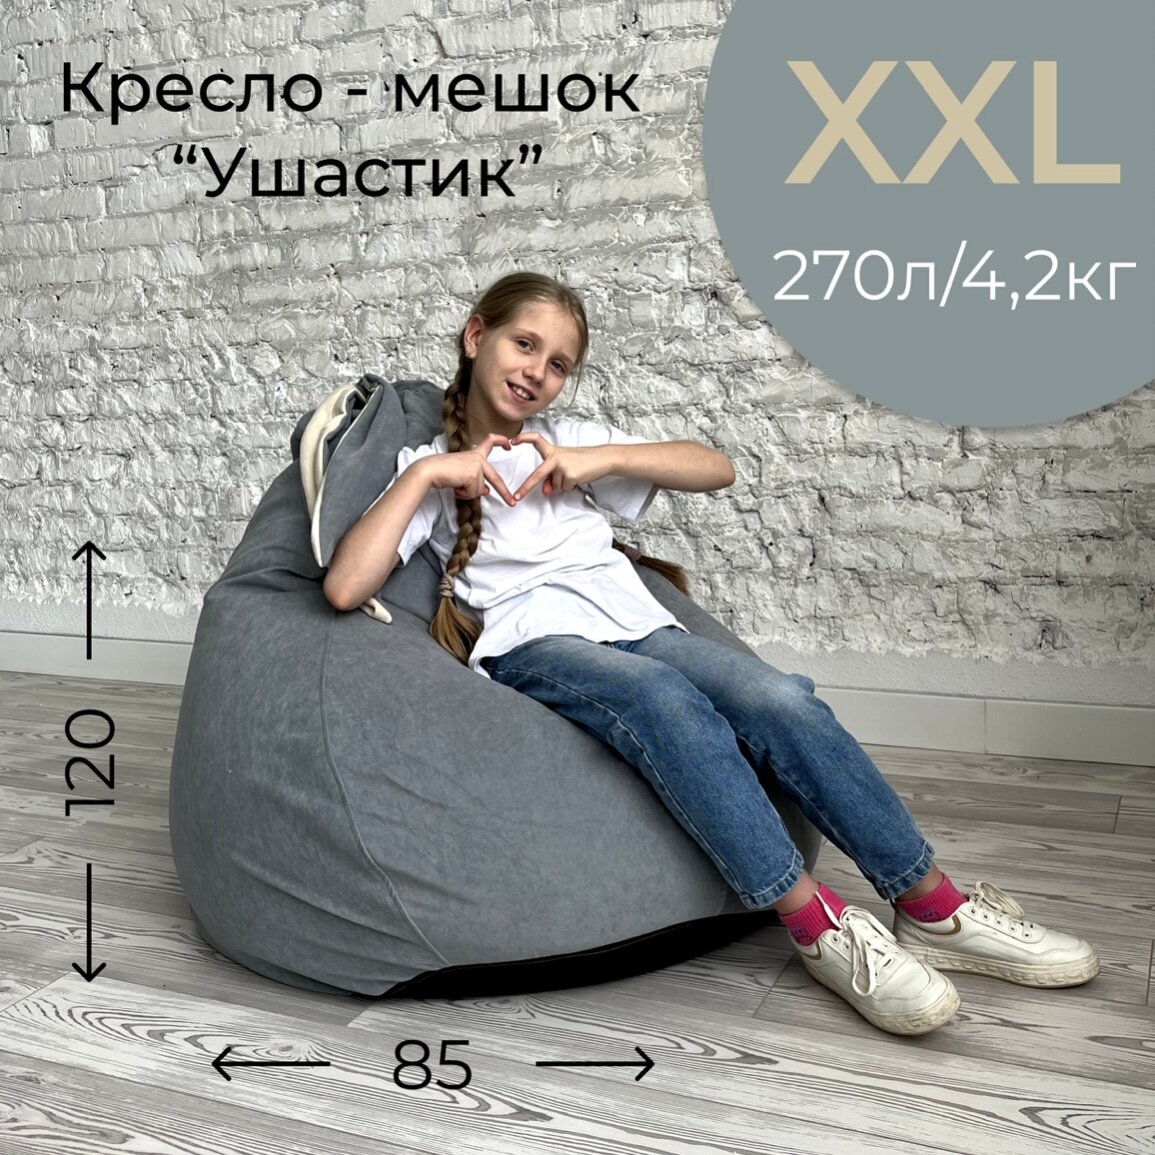 Кресло-мешок "Ушастик" для детей и взрослых, размер XXL